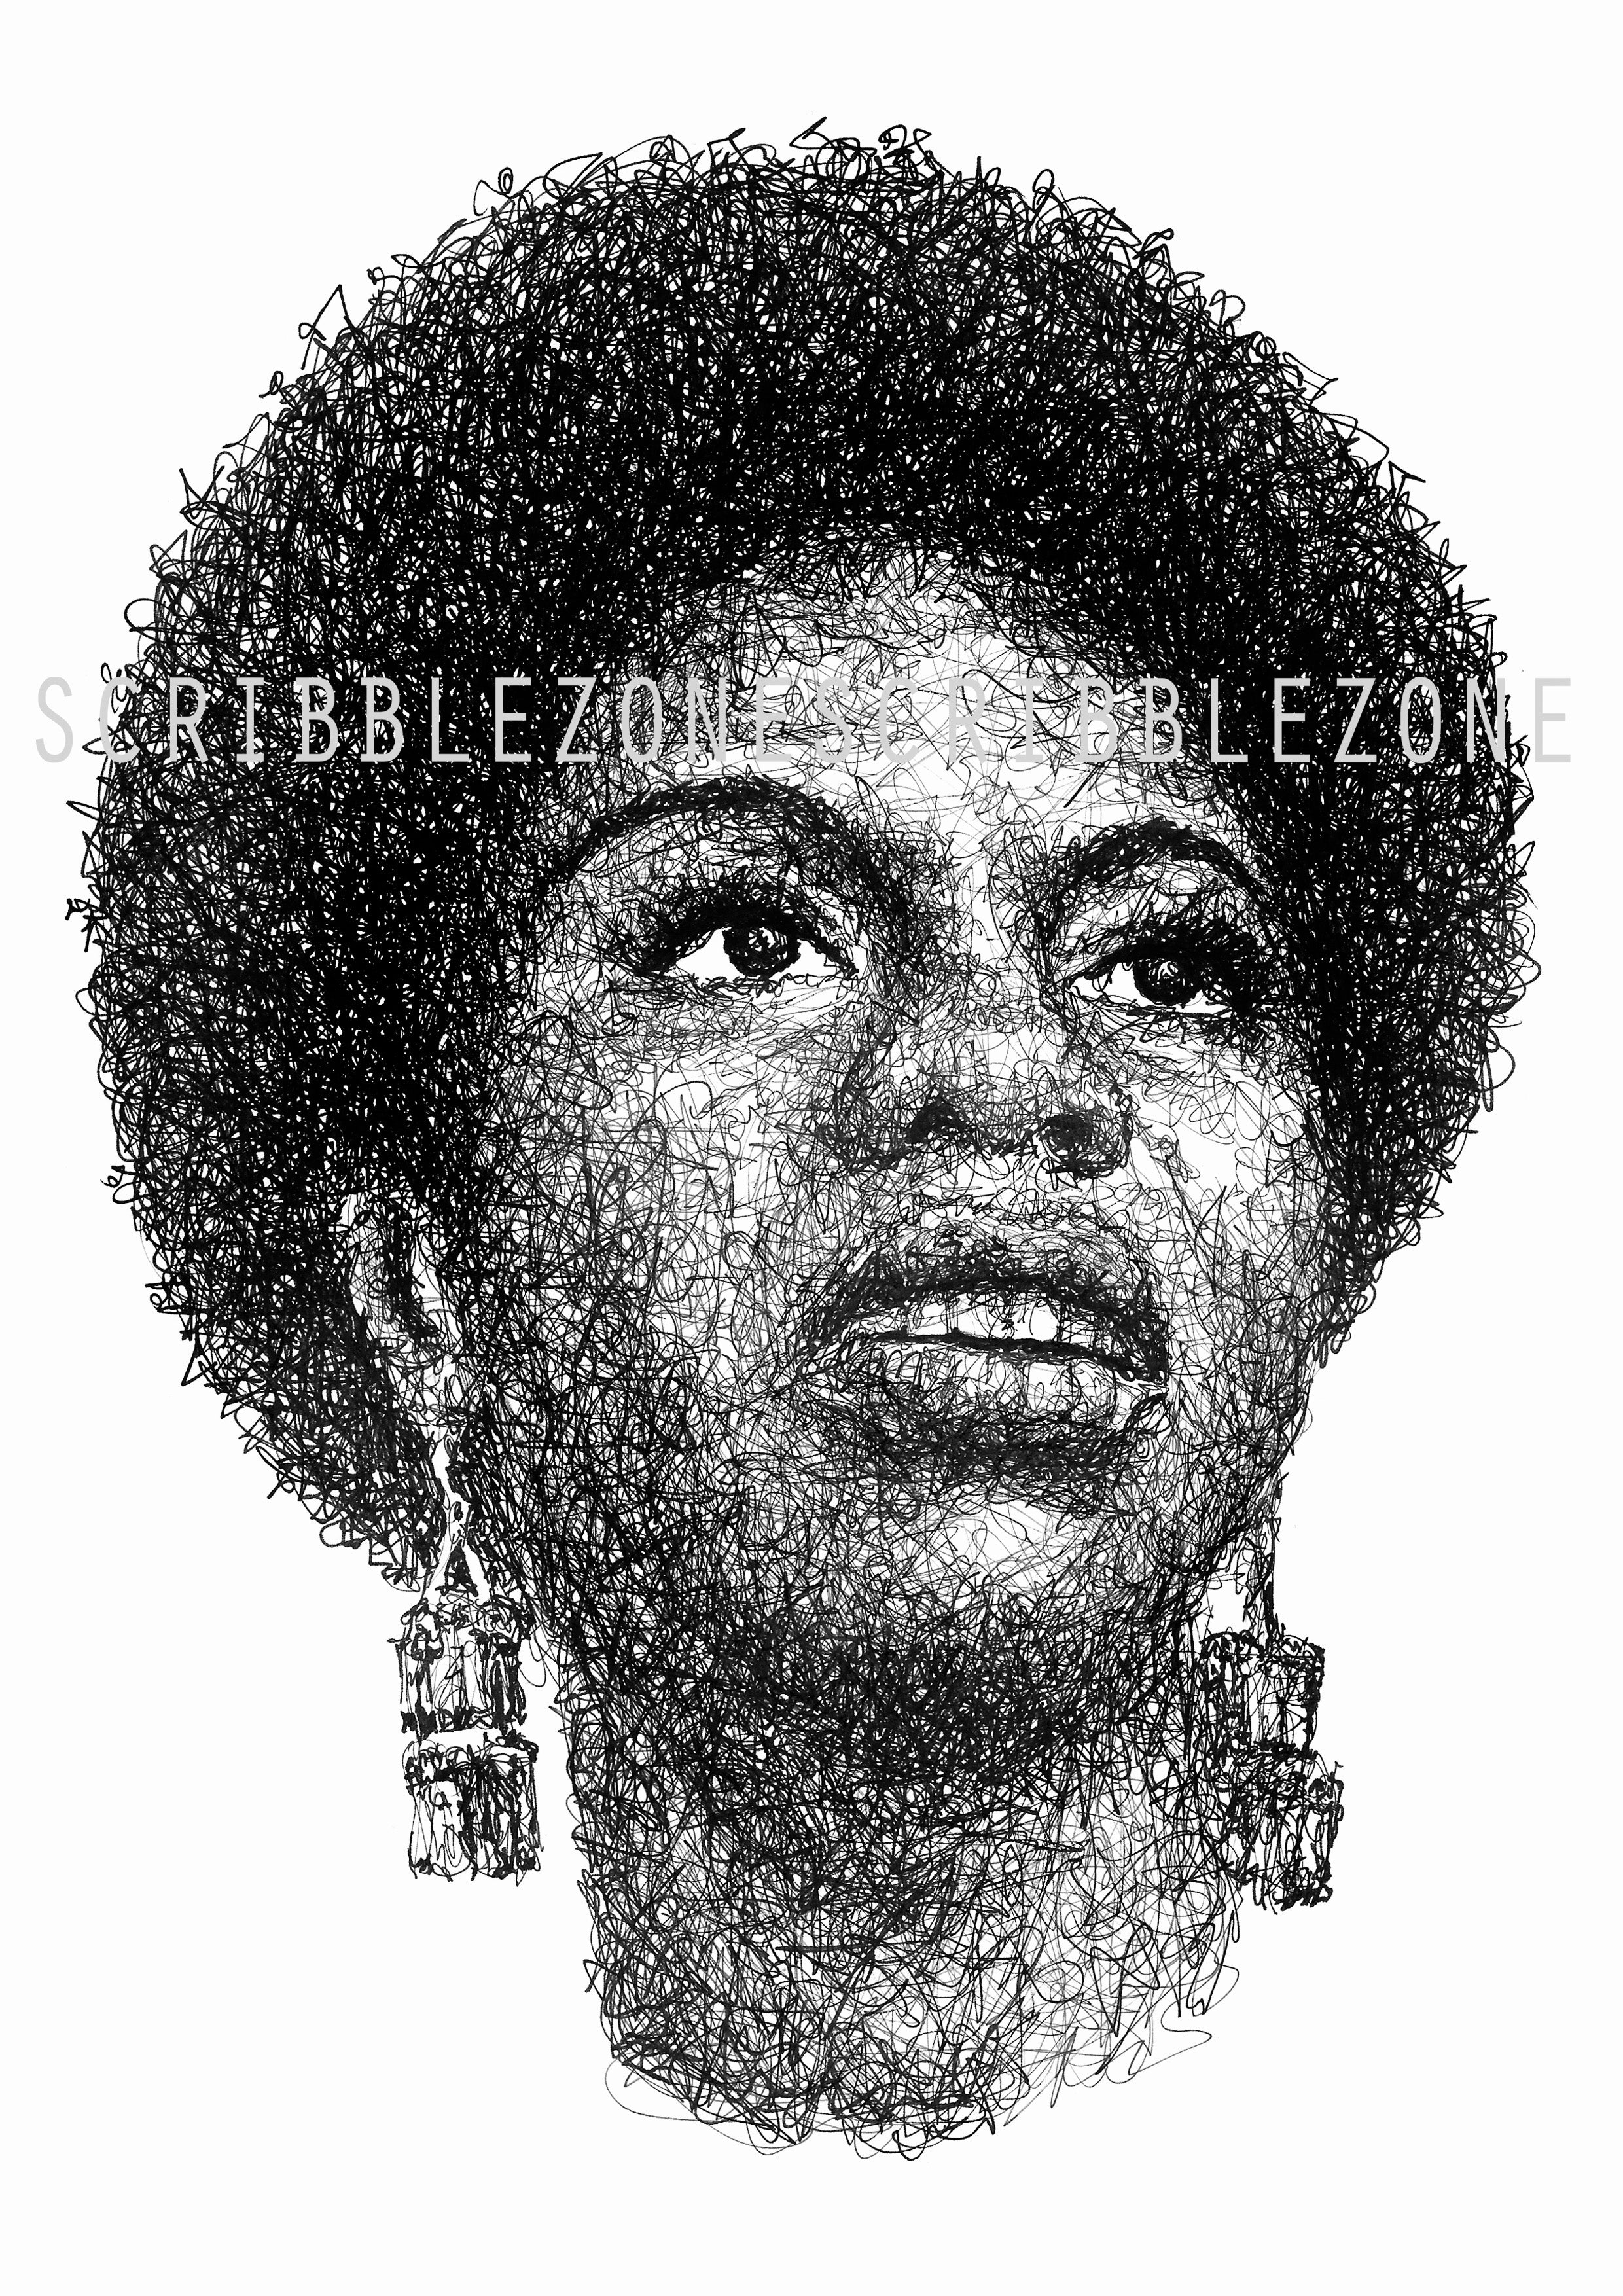 Nina Simone Portrait der Künstlerin Marilena Hamm alias Scribblezone, im unversechselbaren Scribble-Stil gezeichnet, mit Wasserzeichen.